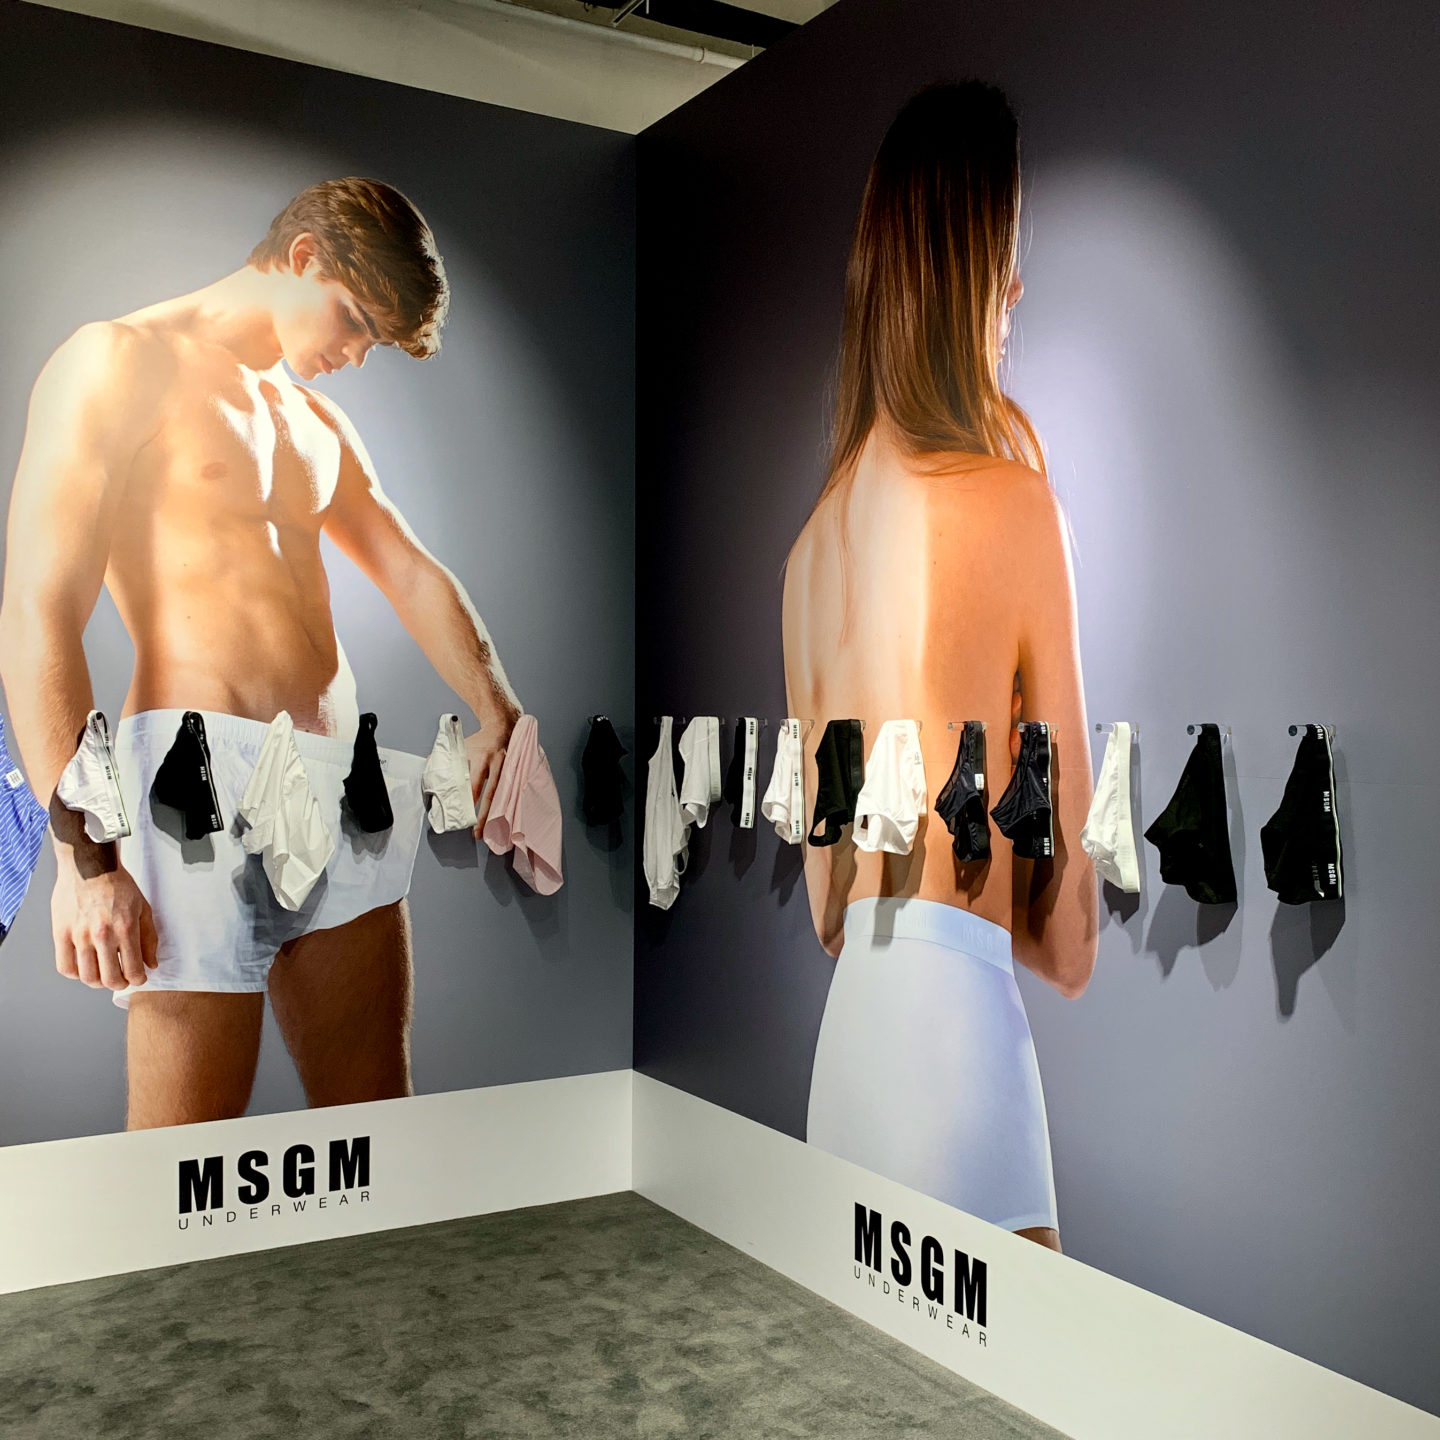 MSGM set design underwear spatial design